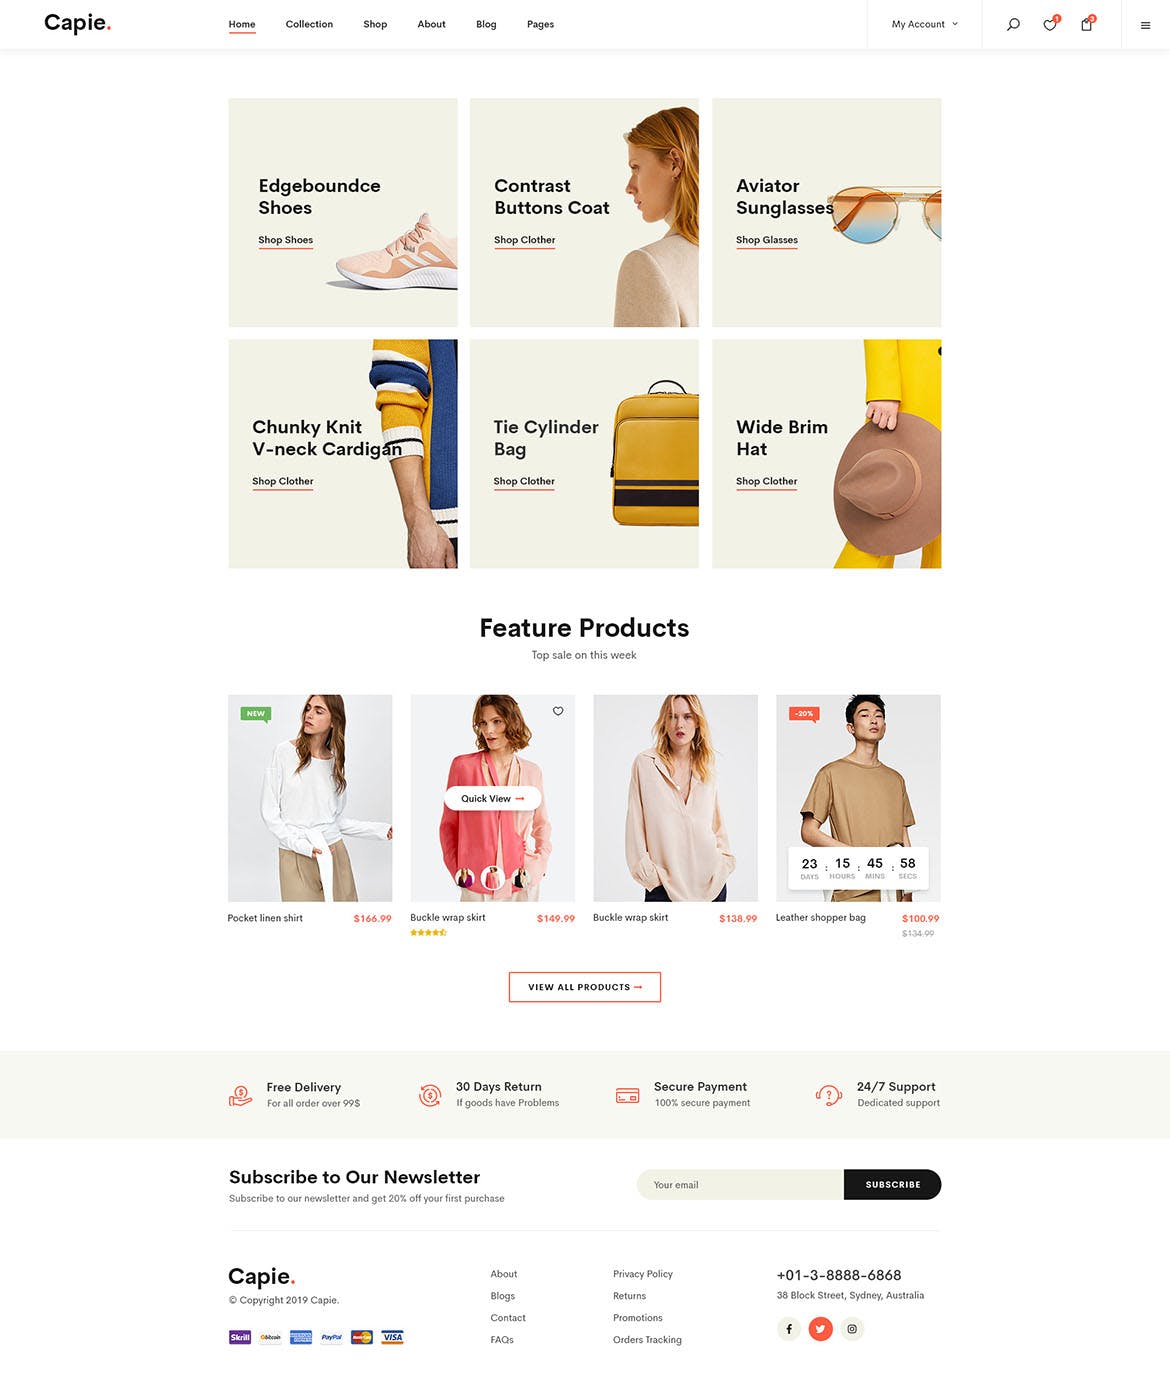 简约时尚设计风格电商网站设计PSD模板 Capie | Minimalist eCommerce PSD Template插图(6)